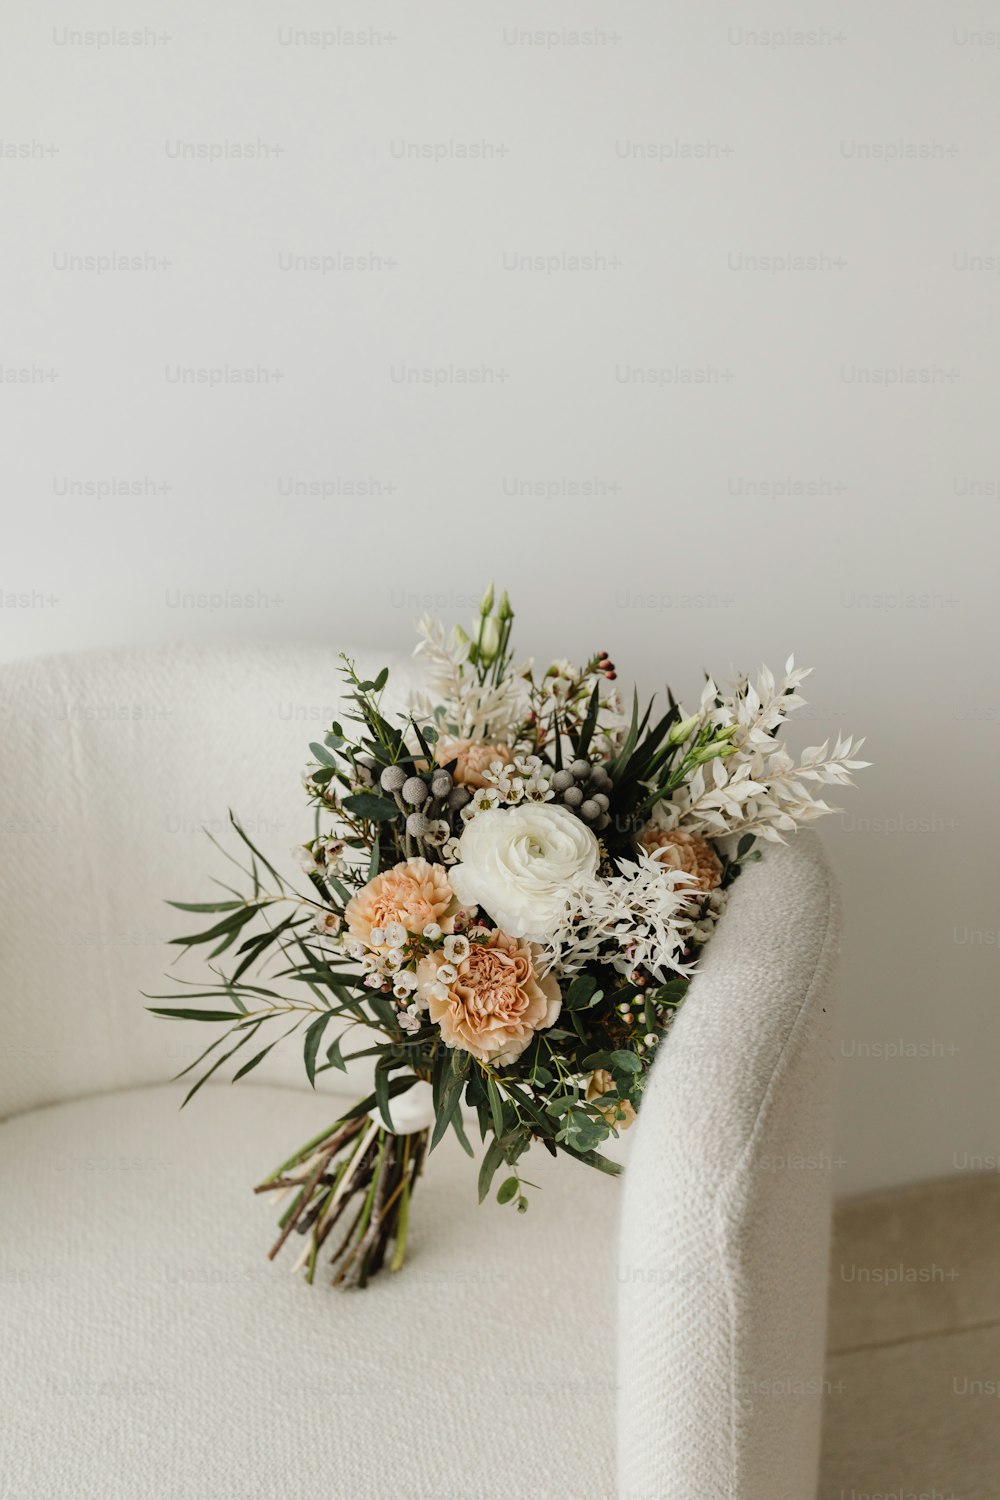 하얀 의자에 앉아 있는 꽃다발